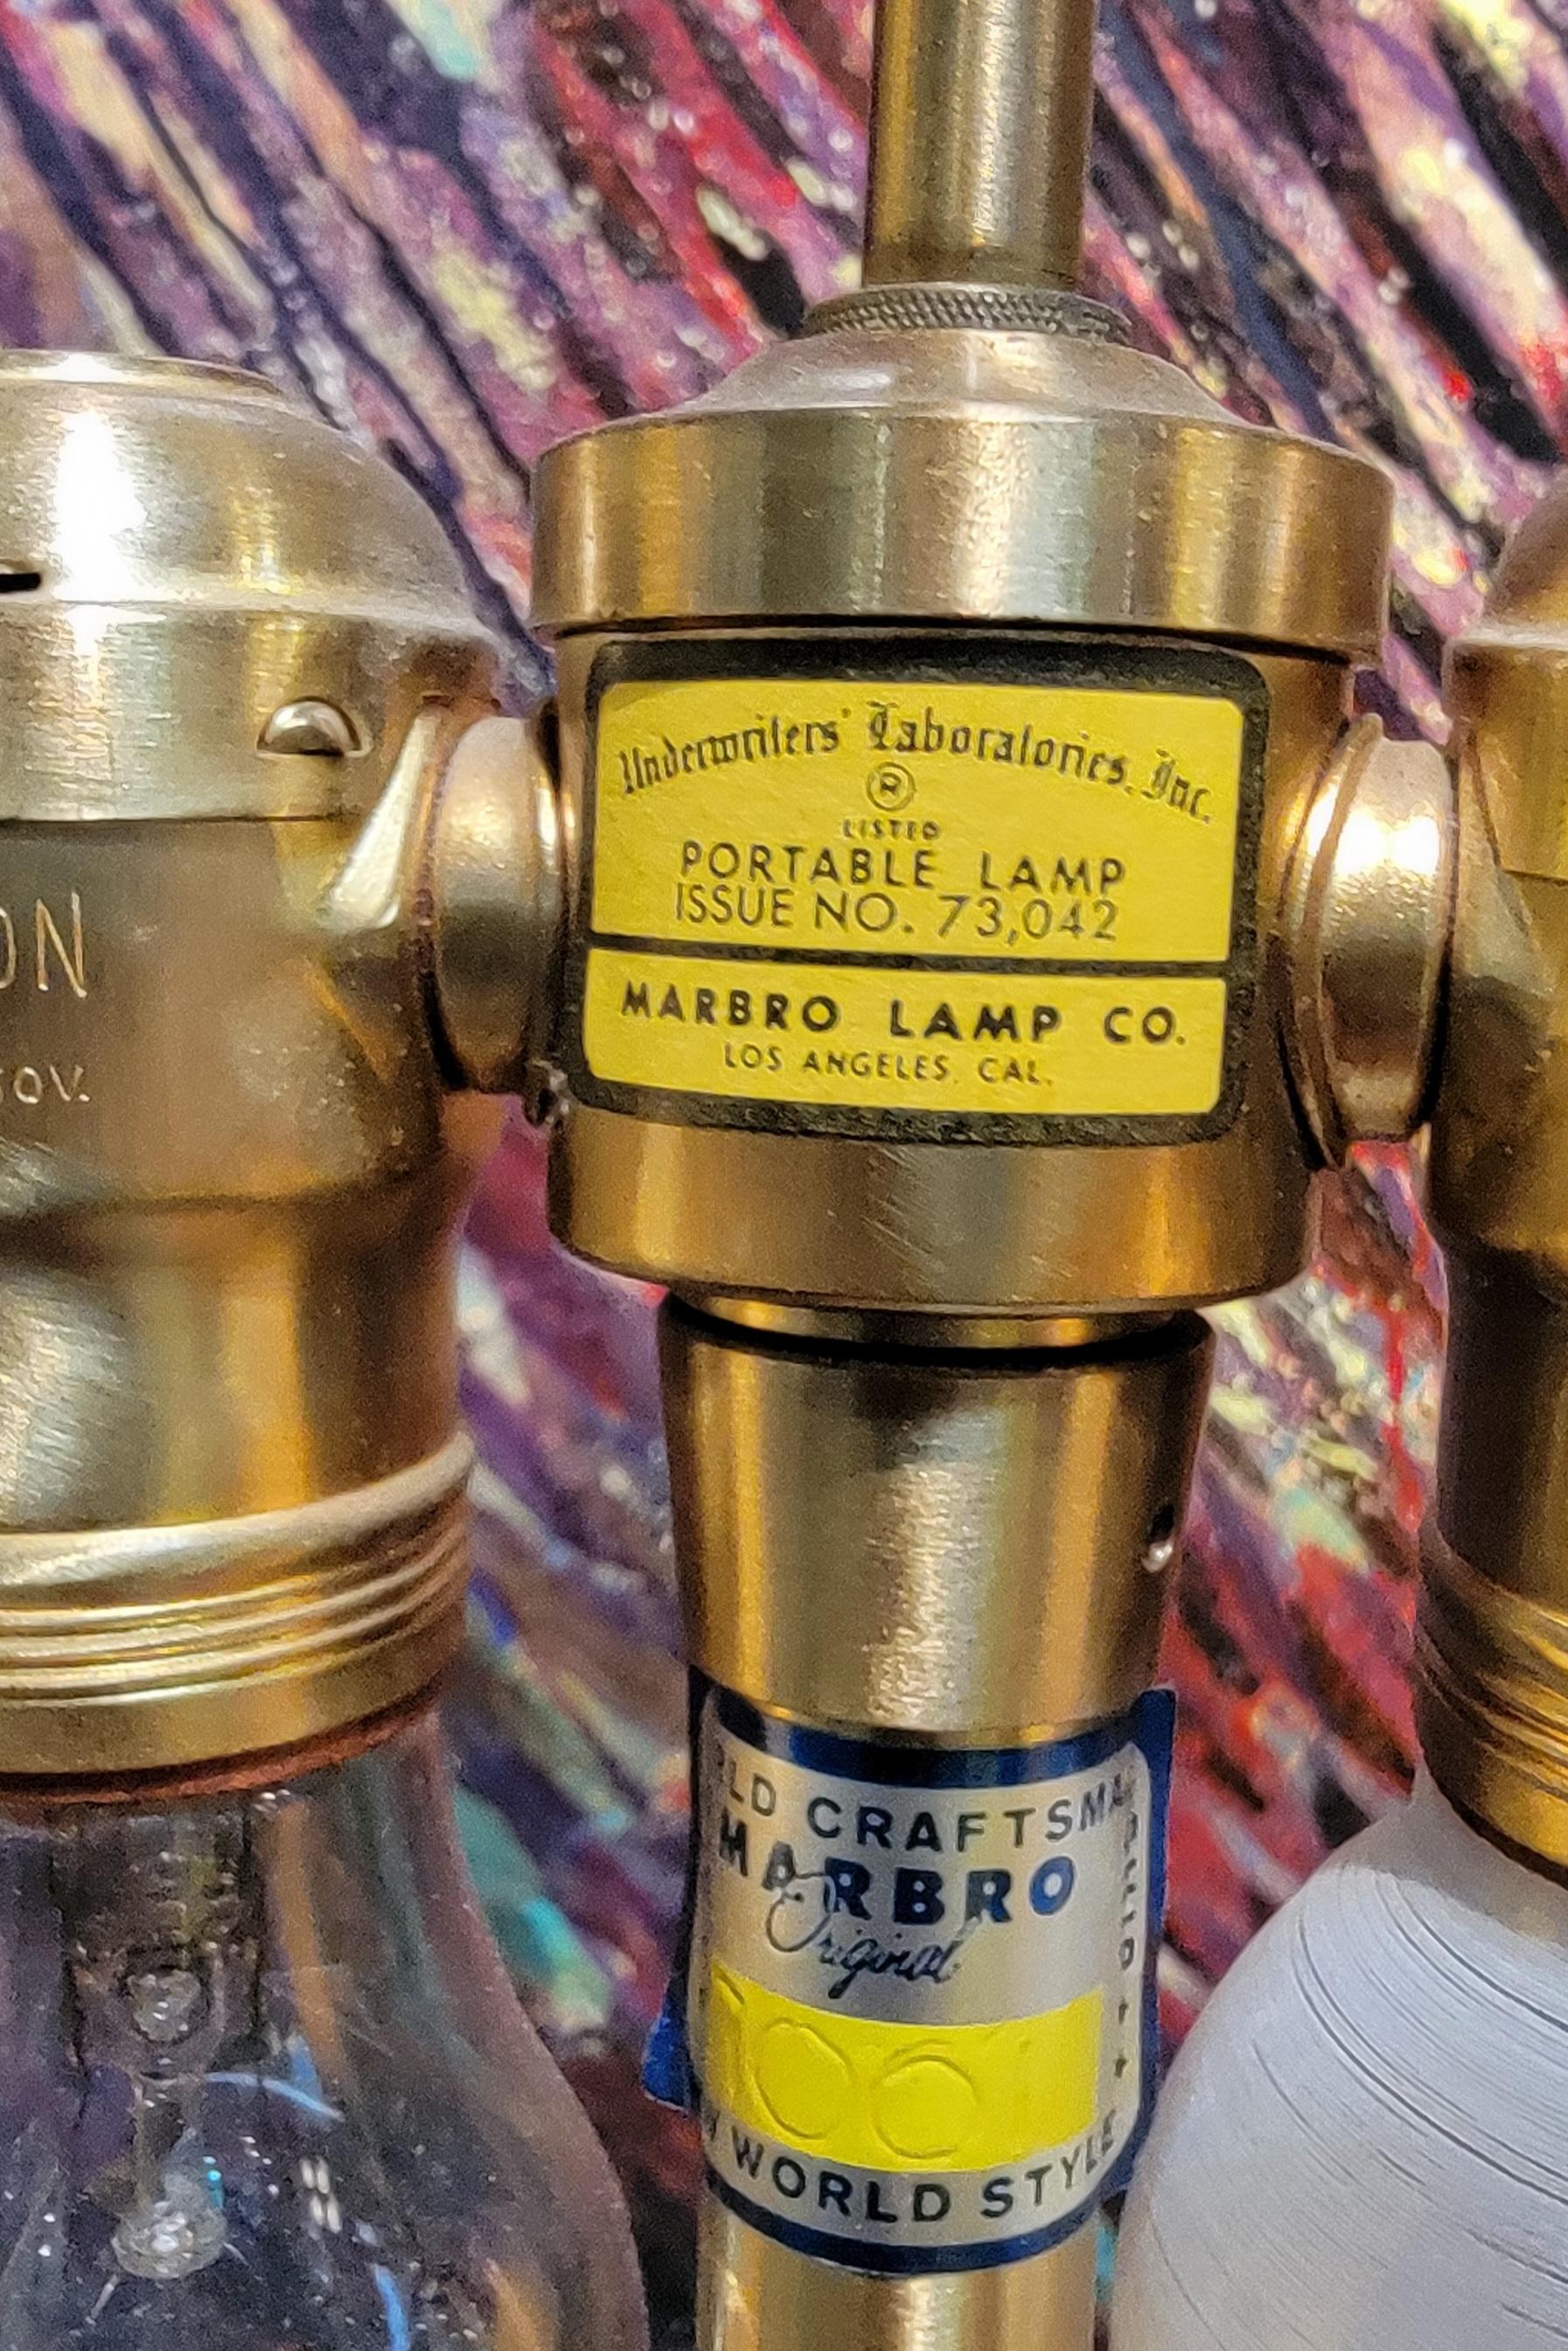 Handbemalte Porzellan-Tischlampe von The Marbro Lamp Company, ca.. 1950's. Ingwerdose im asiatischen Stil mit floralem Motiv. Doppel-Lichtsteckdosen mit Zugkette. Marbro-Etiketten aufbewahren. Sockel in ausgezeichnetem Originalzustand, der